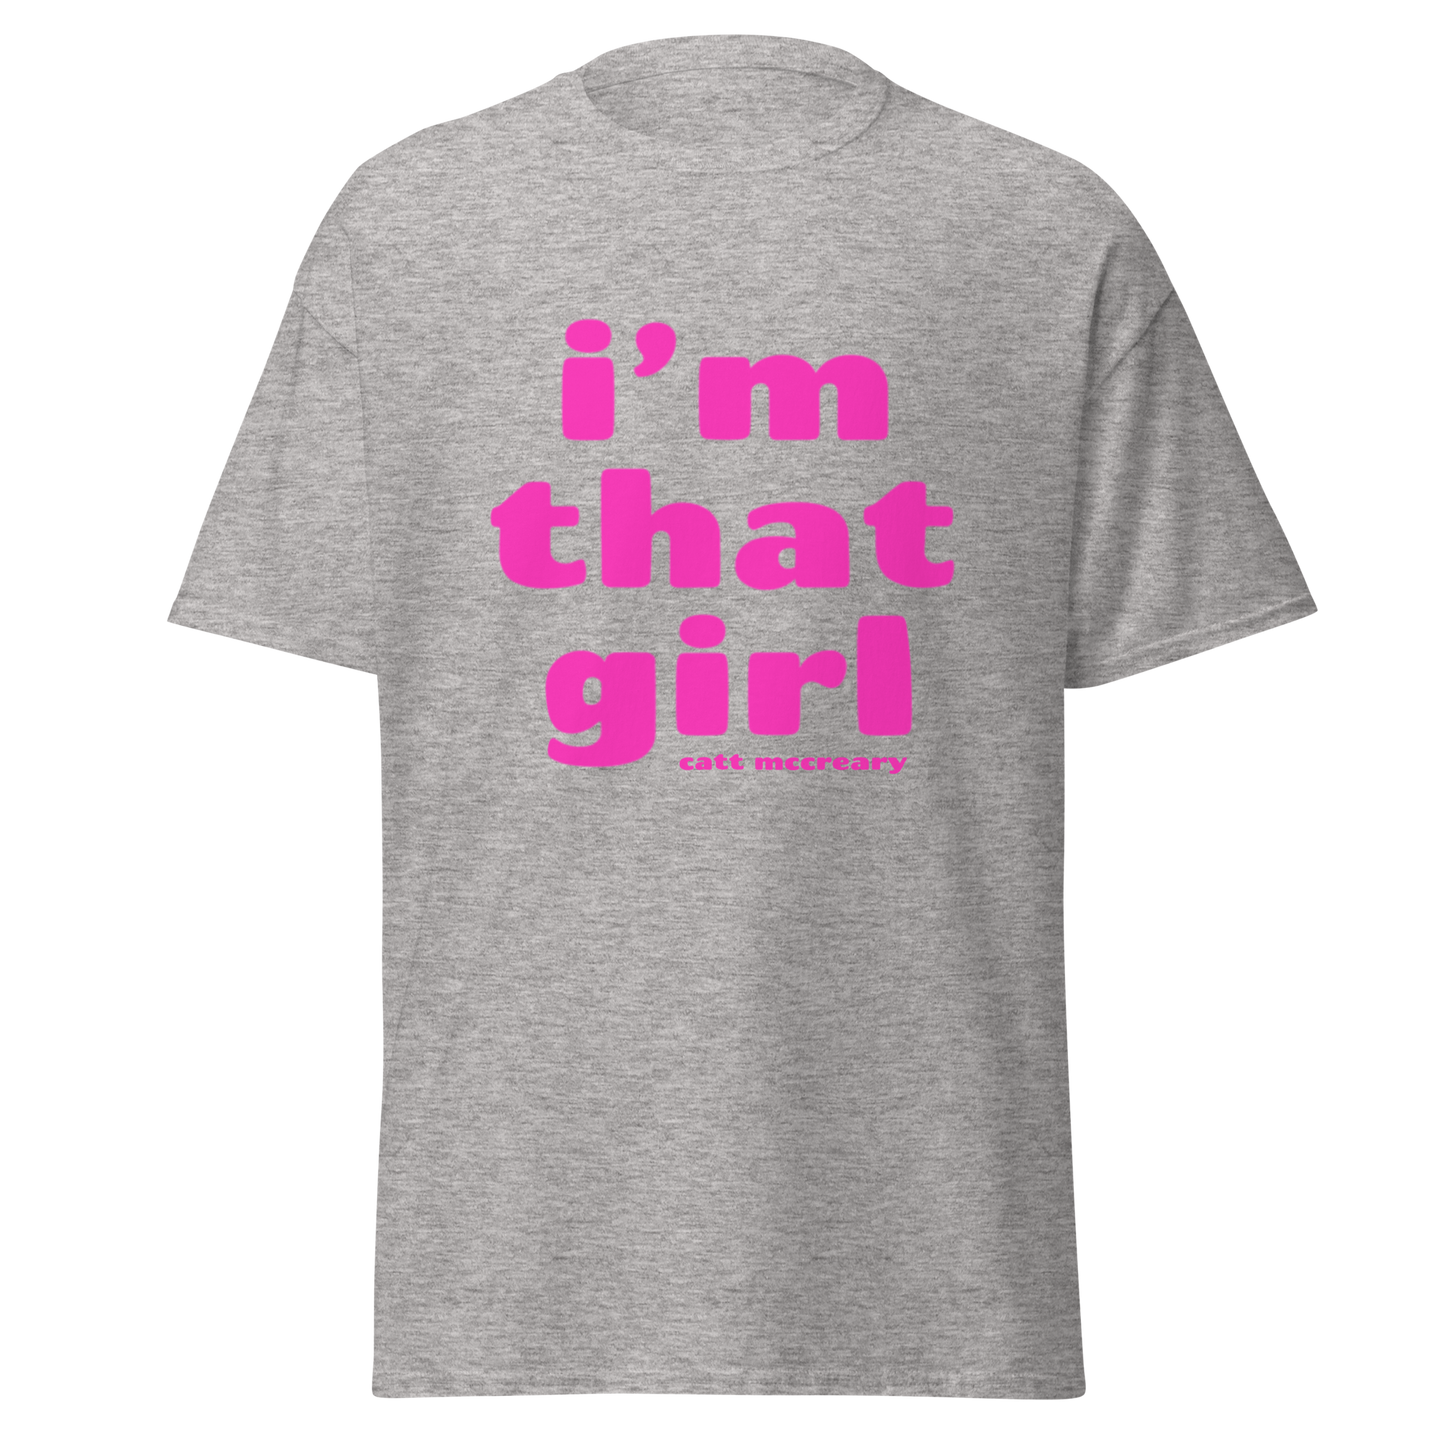 'i'm that girl' Unisex T-Shirt